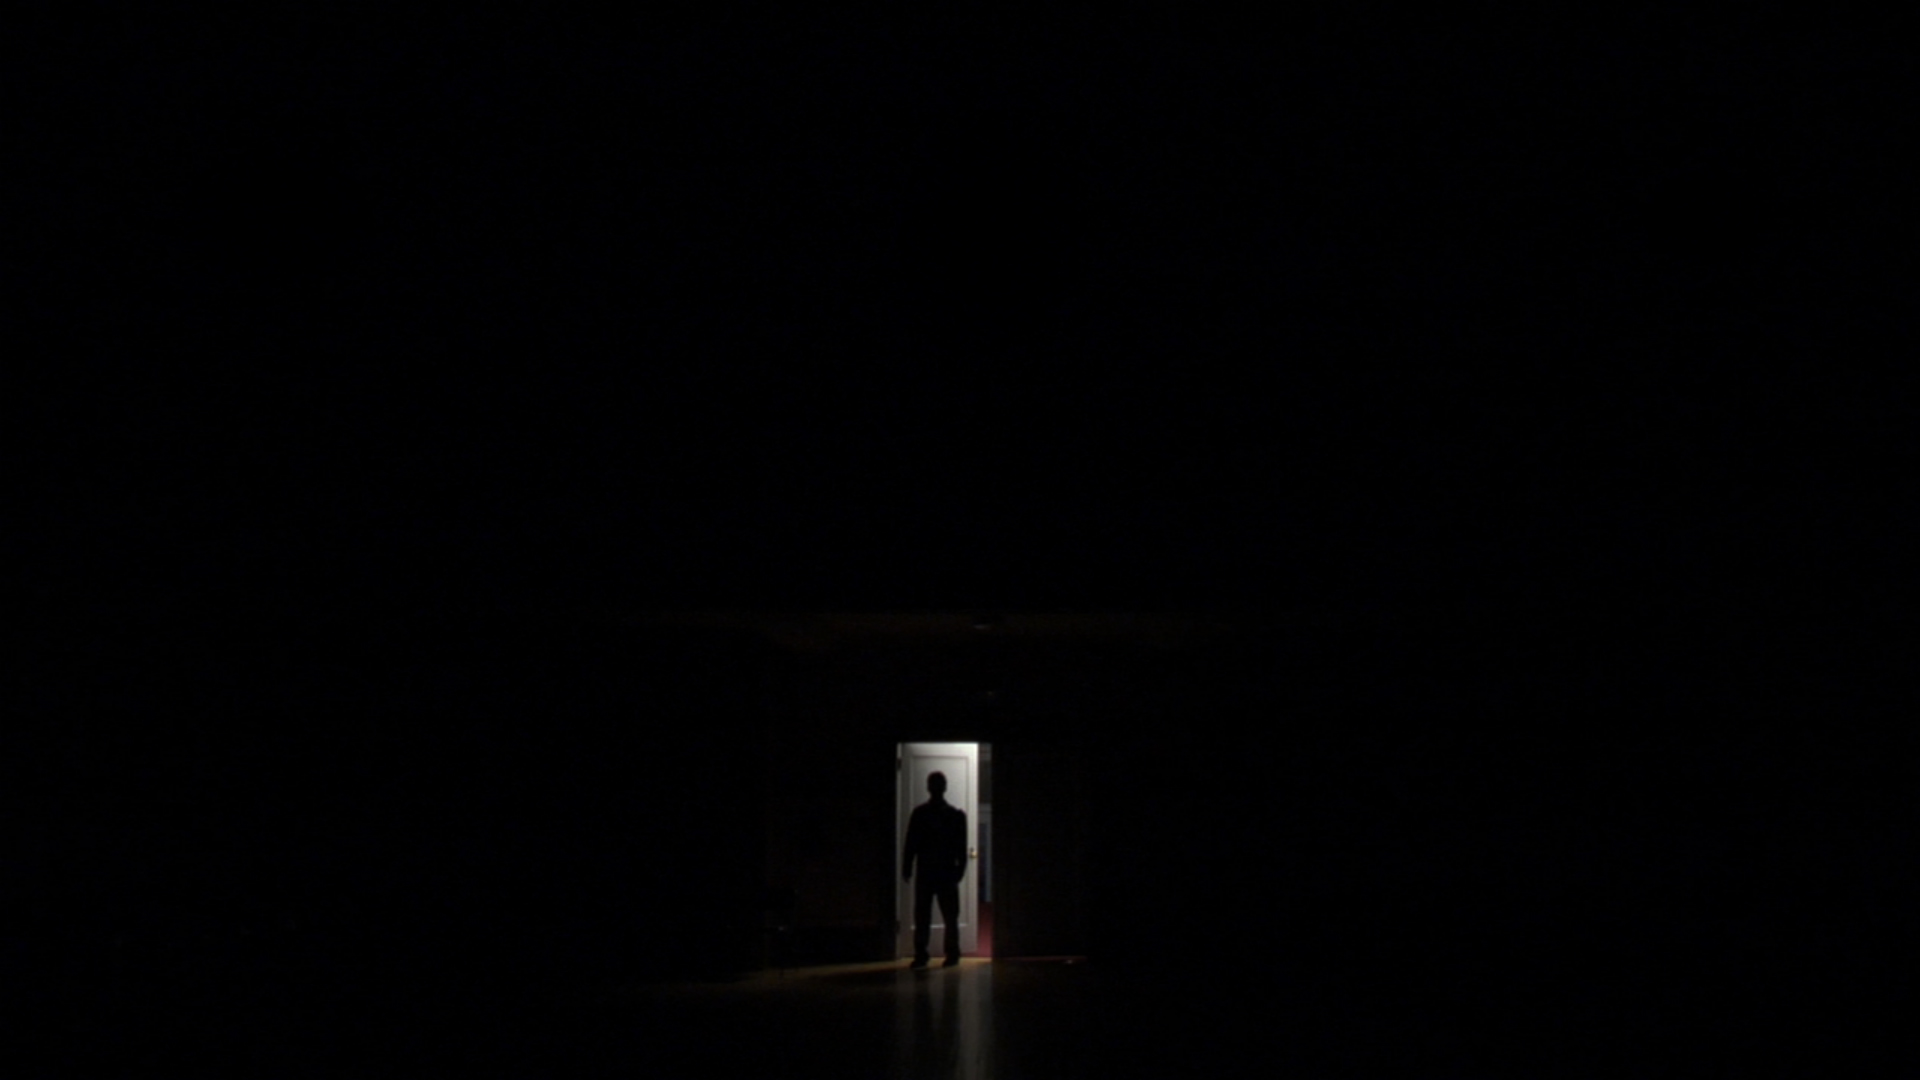 Ночи теплы и непроглядны в черной тьме. Темный силуэт в комнате. Человек в темной комнате. Силуэт в темноте. Темнота.